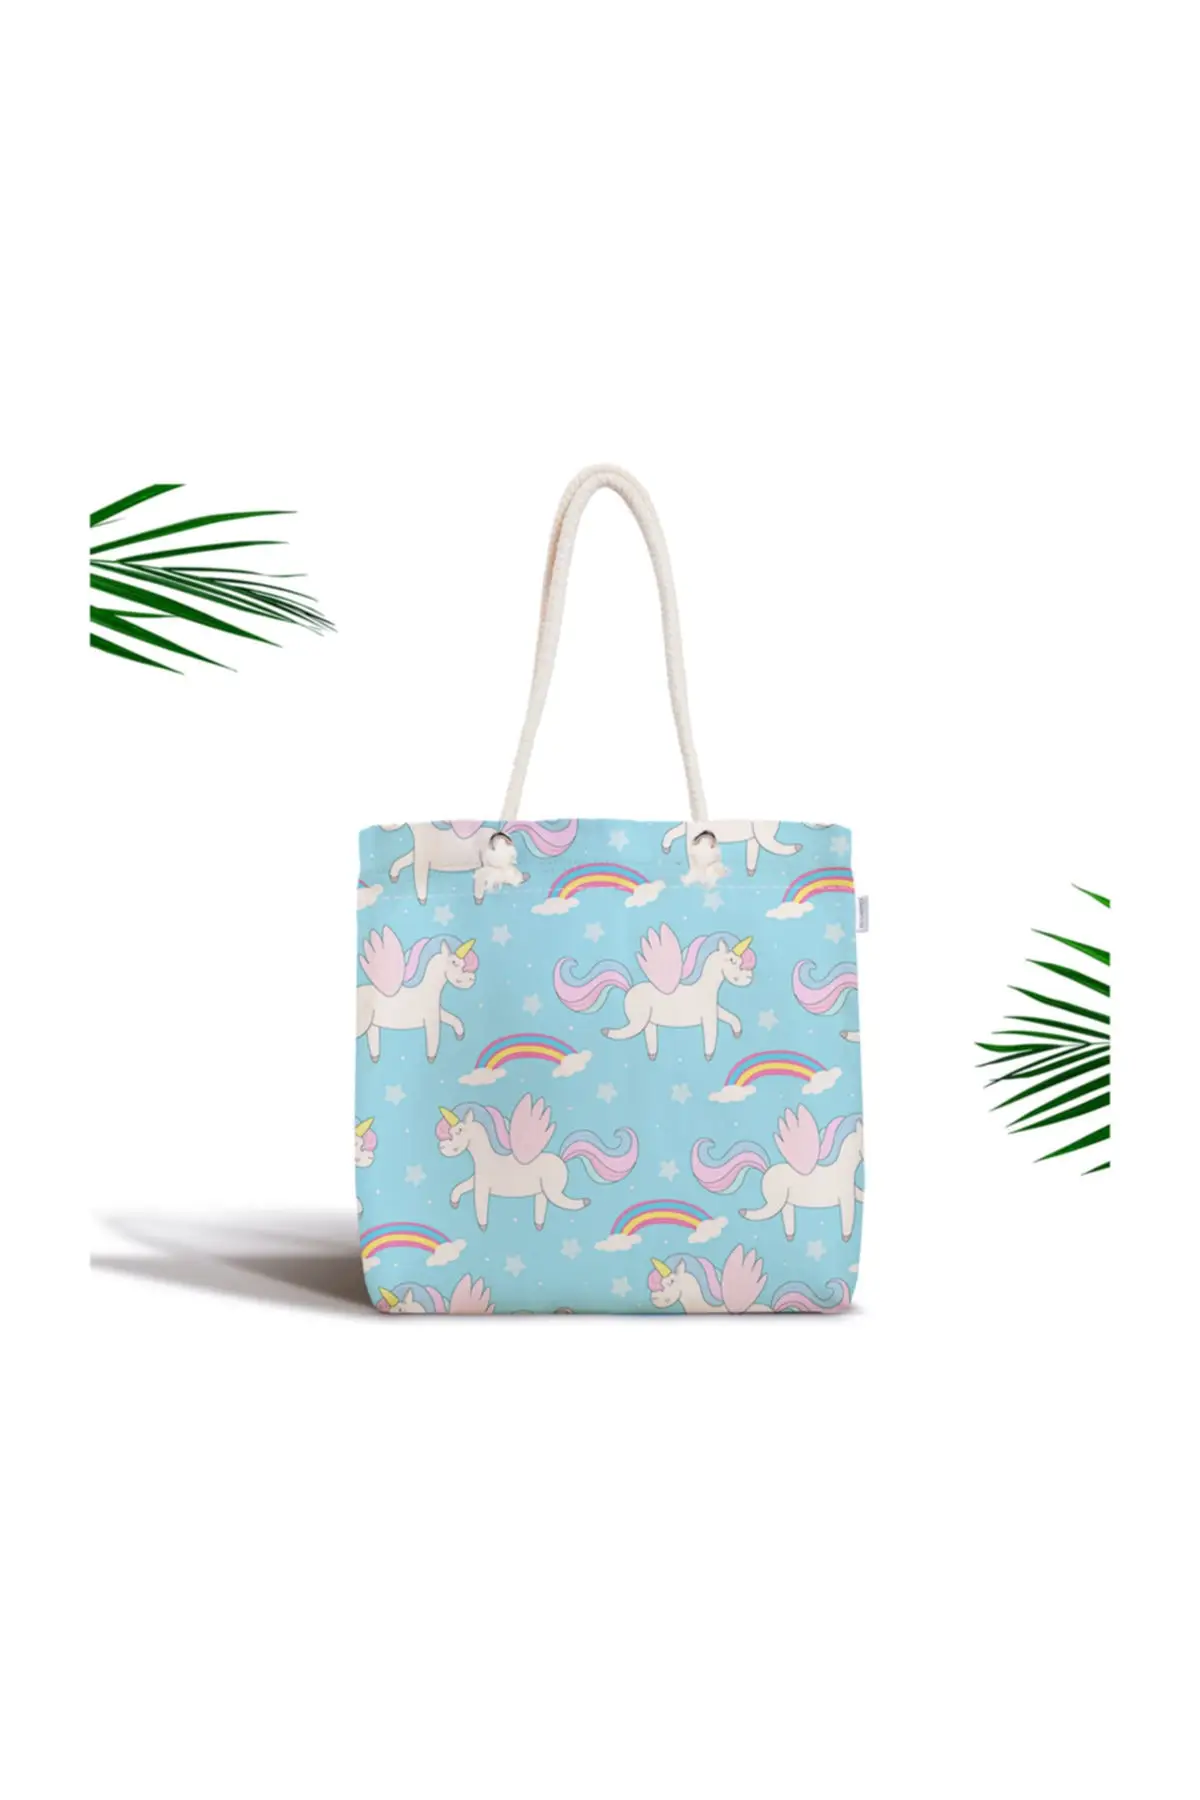 

Женская пляжная сумка на молнии с цифровой печатью, современная ткань на цветном синем фоне, сумка-тоут, летние сумки для покупок